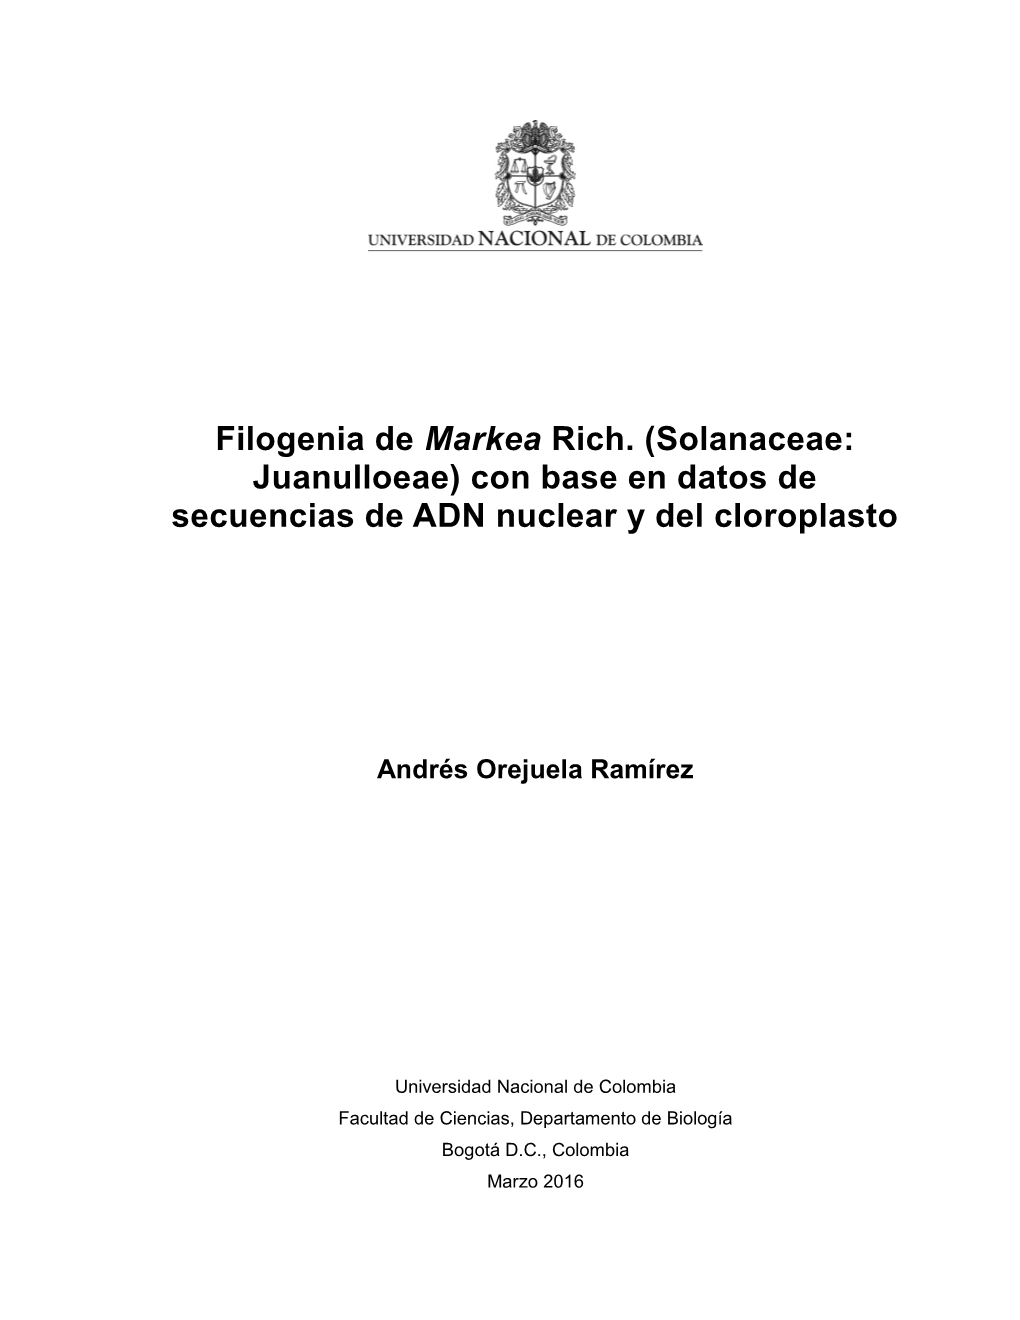 Filogenia De Markea Rich. (Solanaceae: Juanulloeae) Con Base En Datos De Secuencias De ADN Nuclear Y Del Cloroplasto